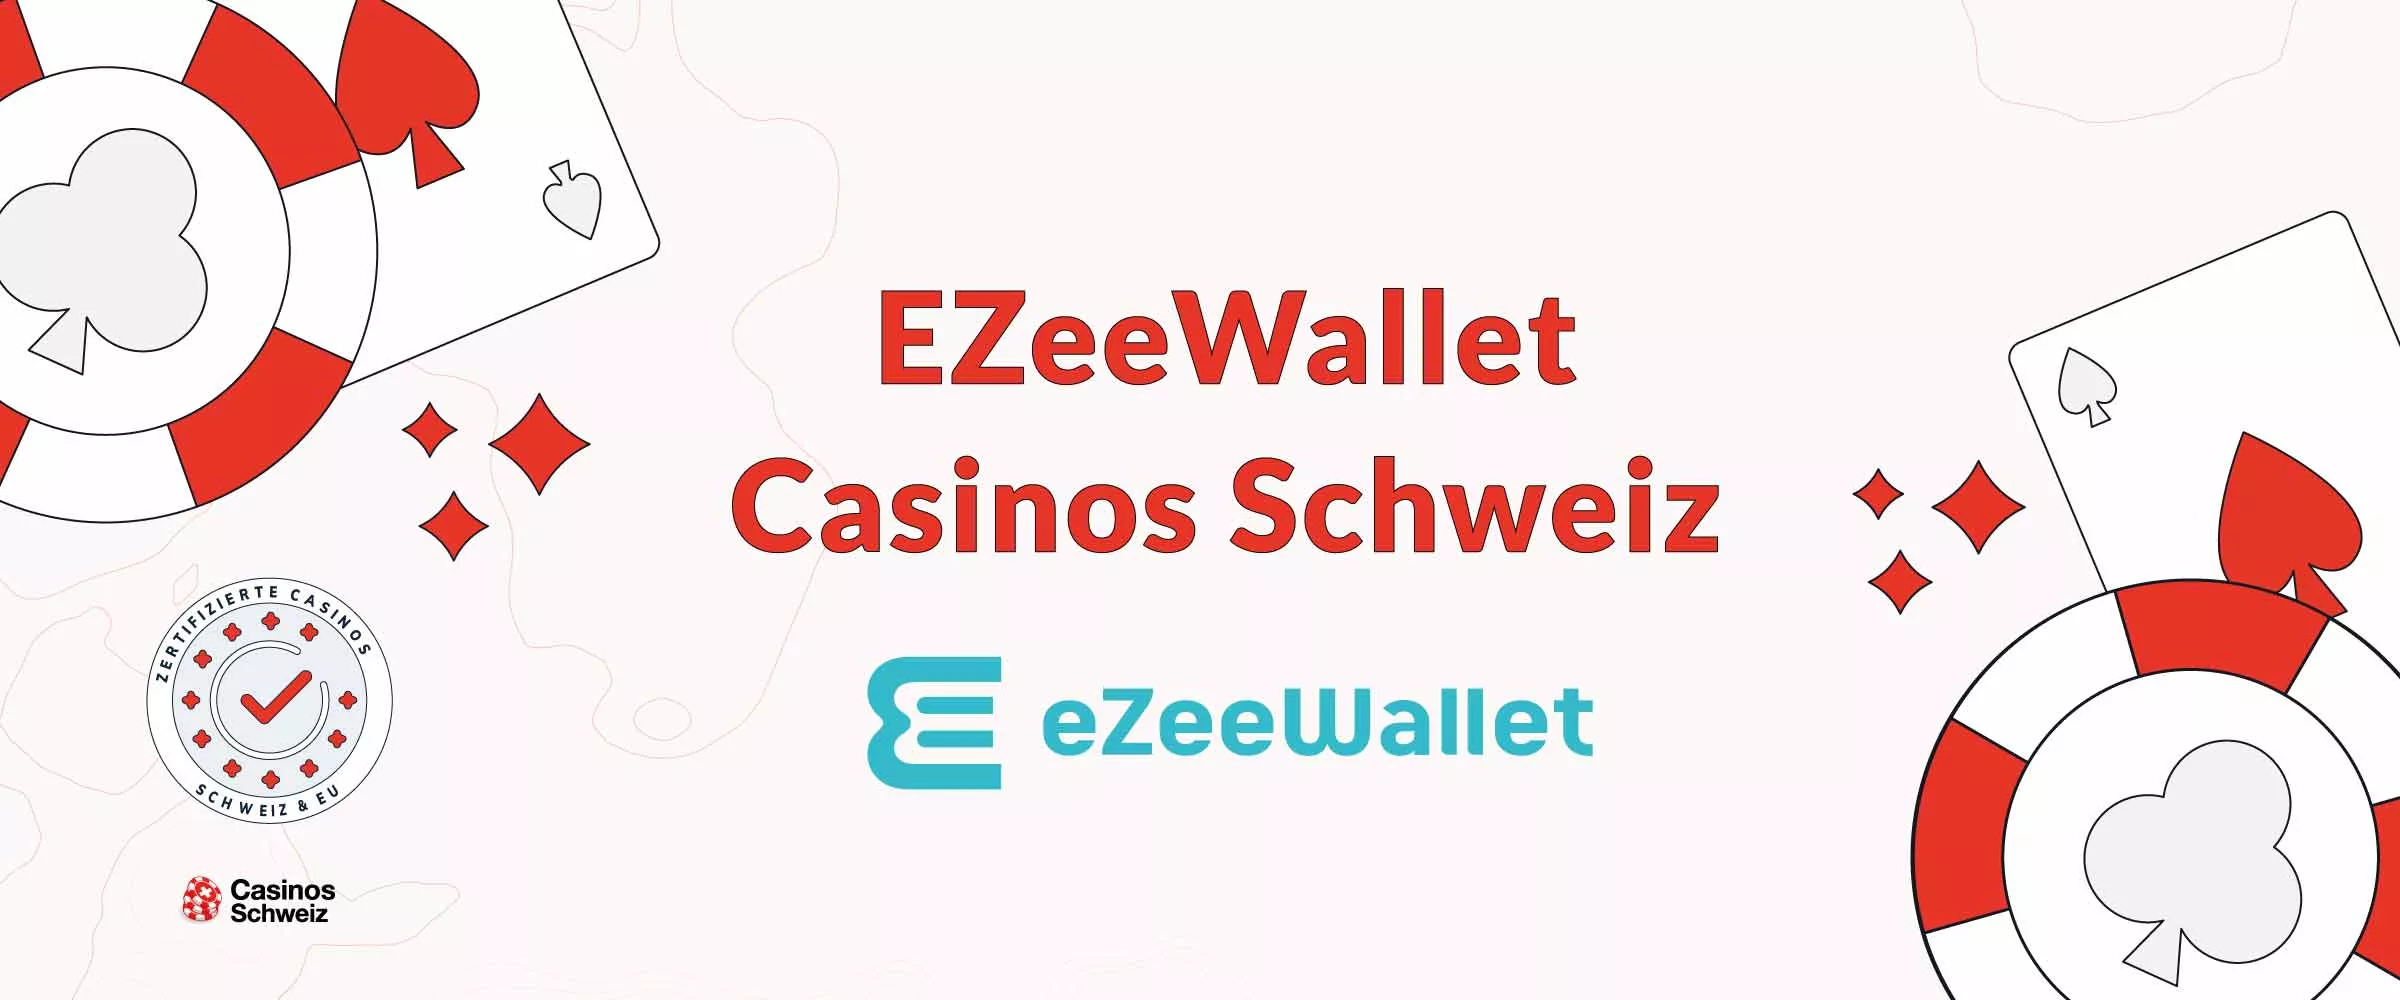 eZeeWallet Casinos Schweiz